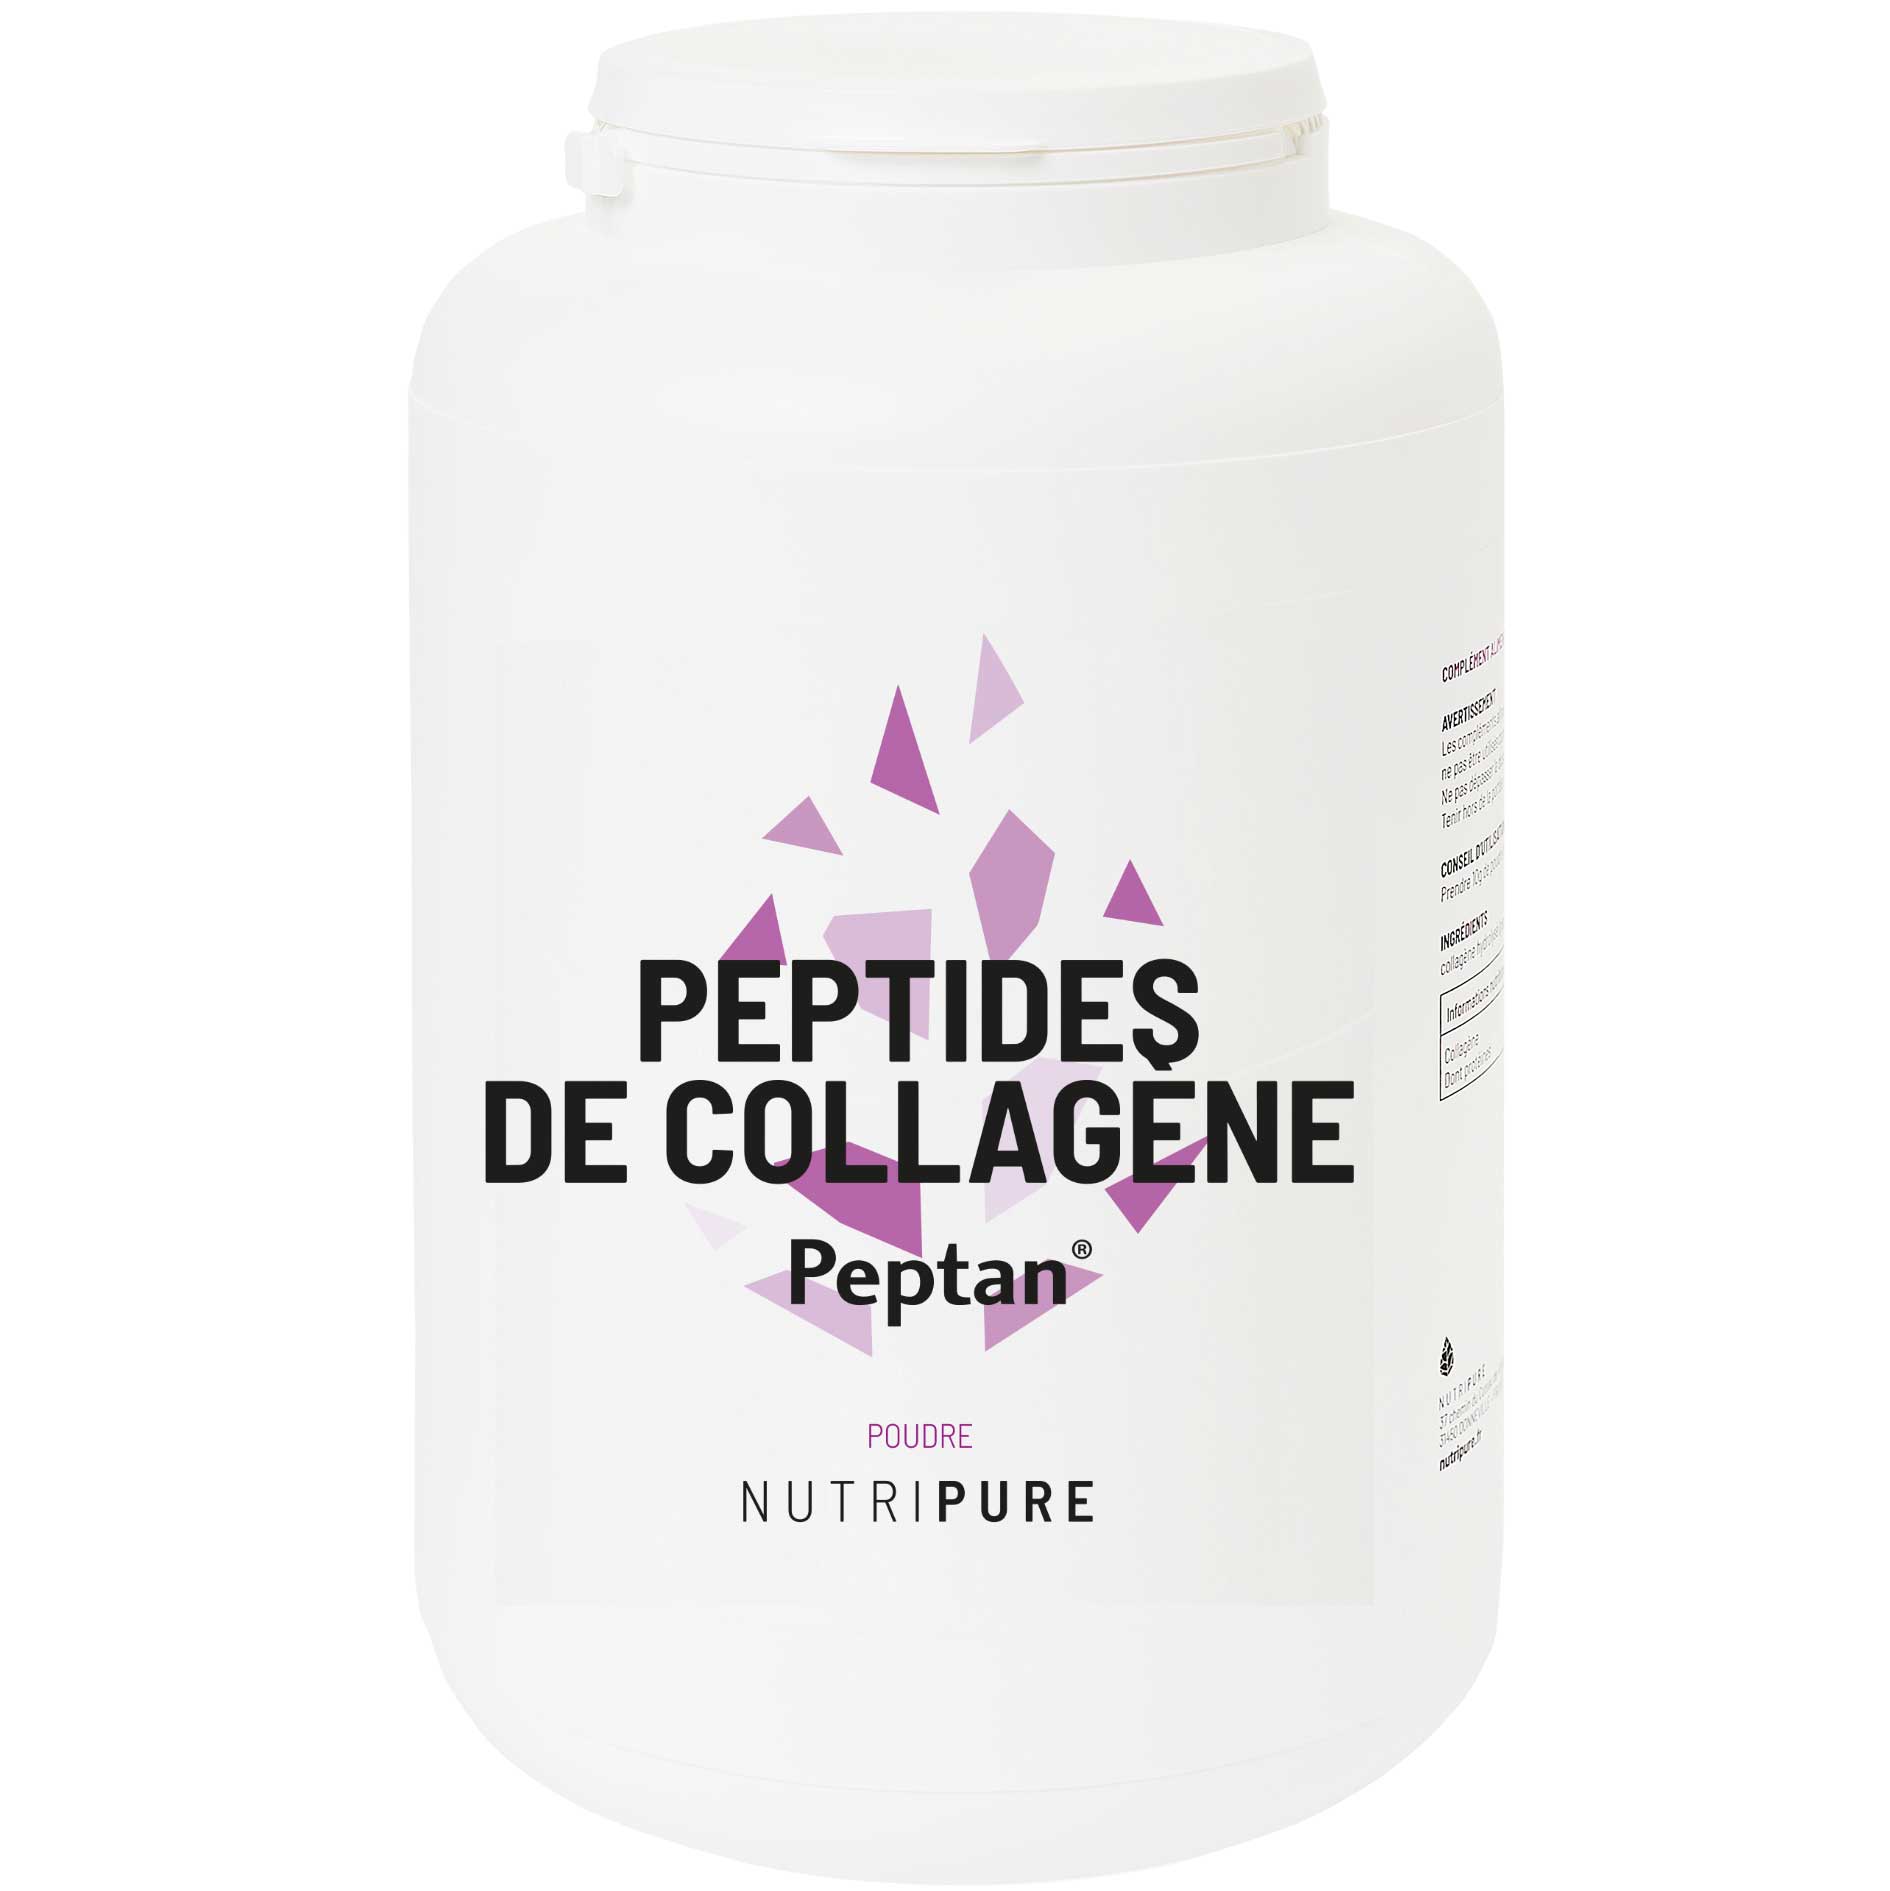 Peptides de collagène Peptan 2000 daltons pour la protection des tendons et des articulations